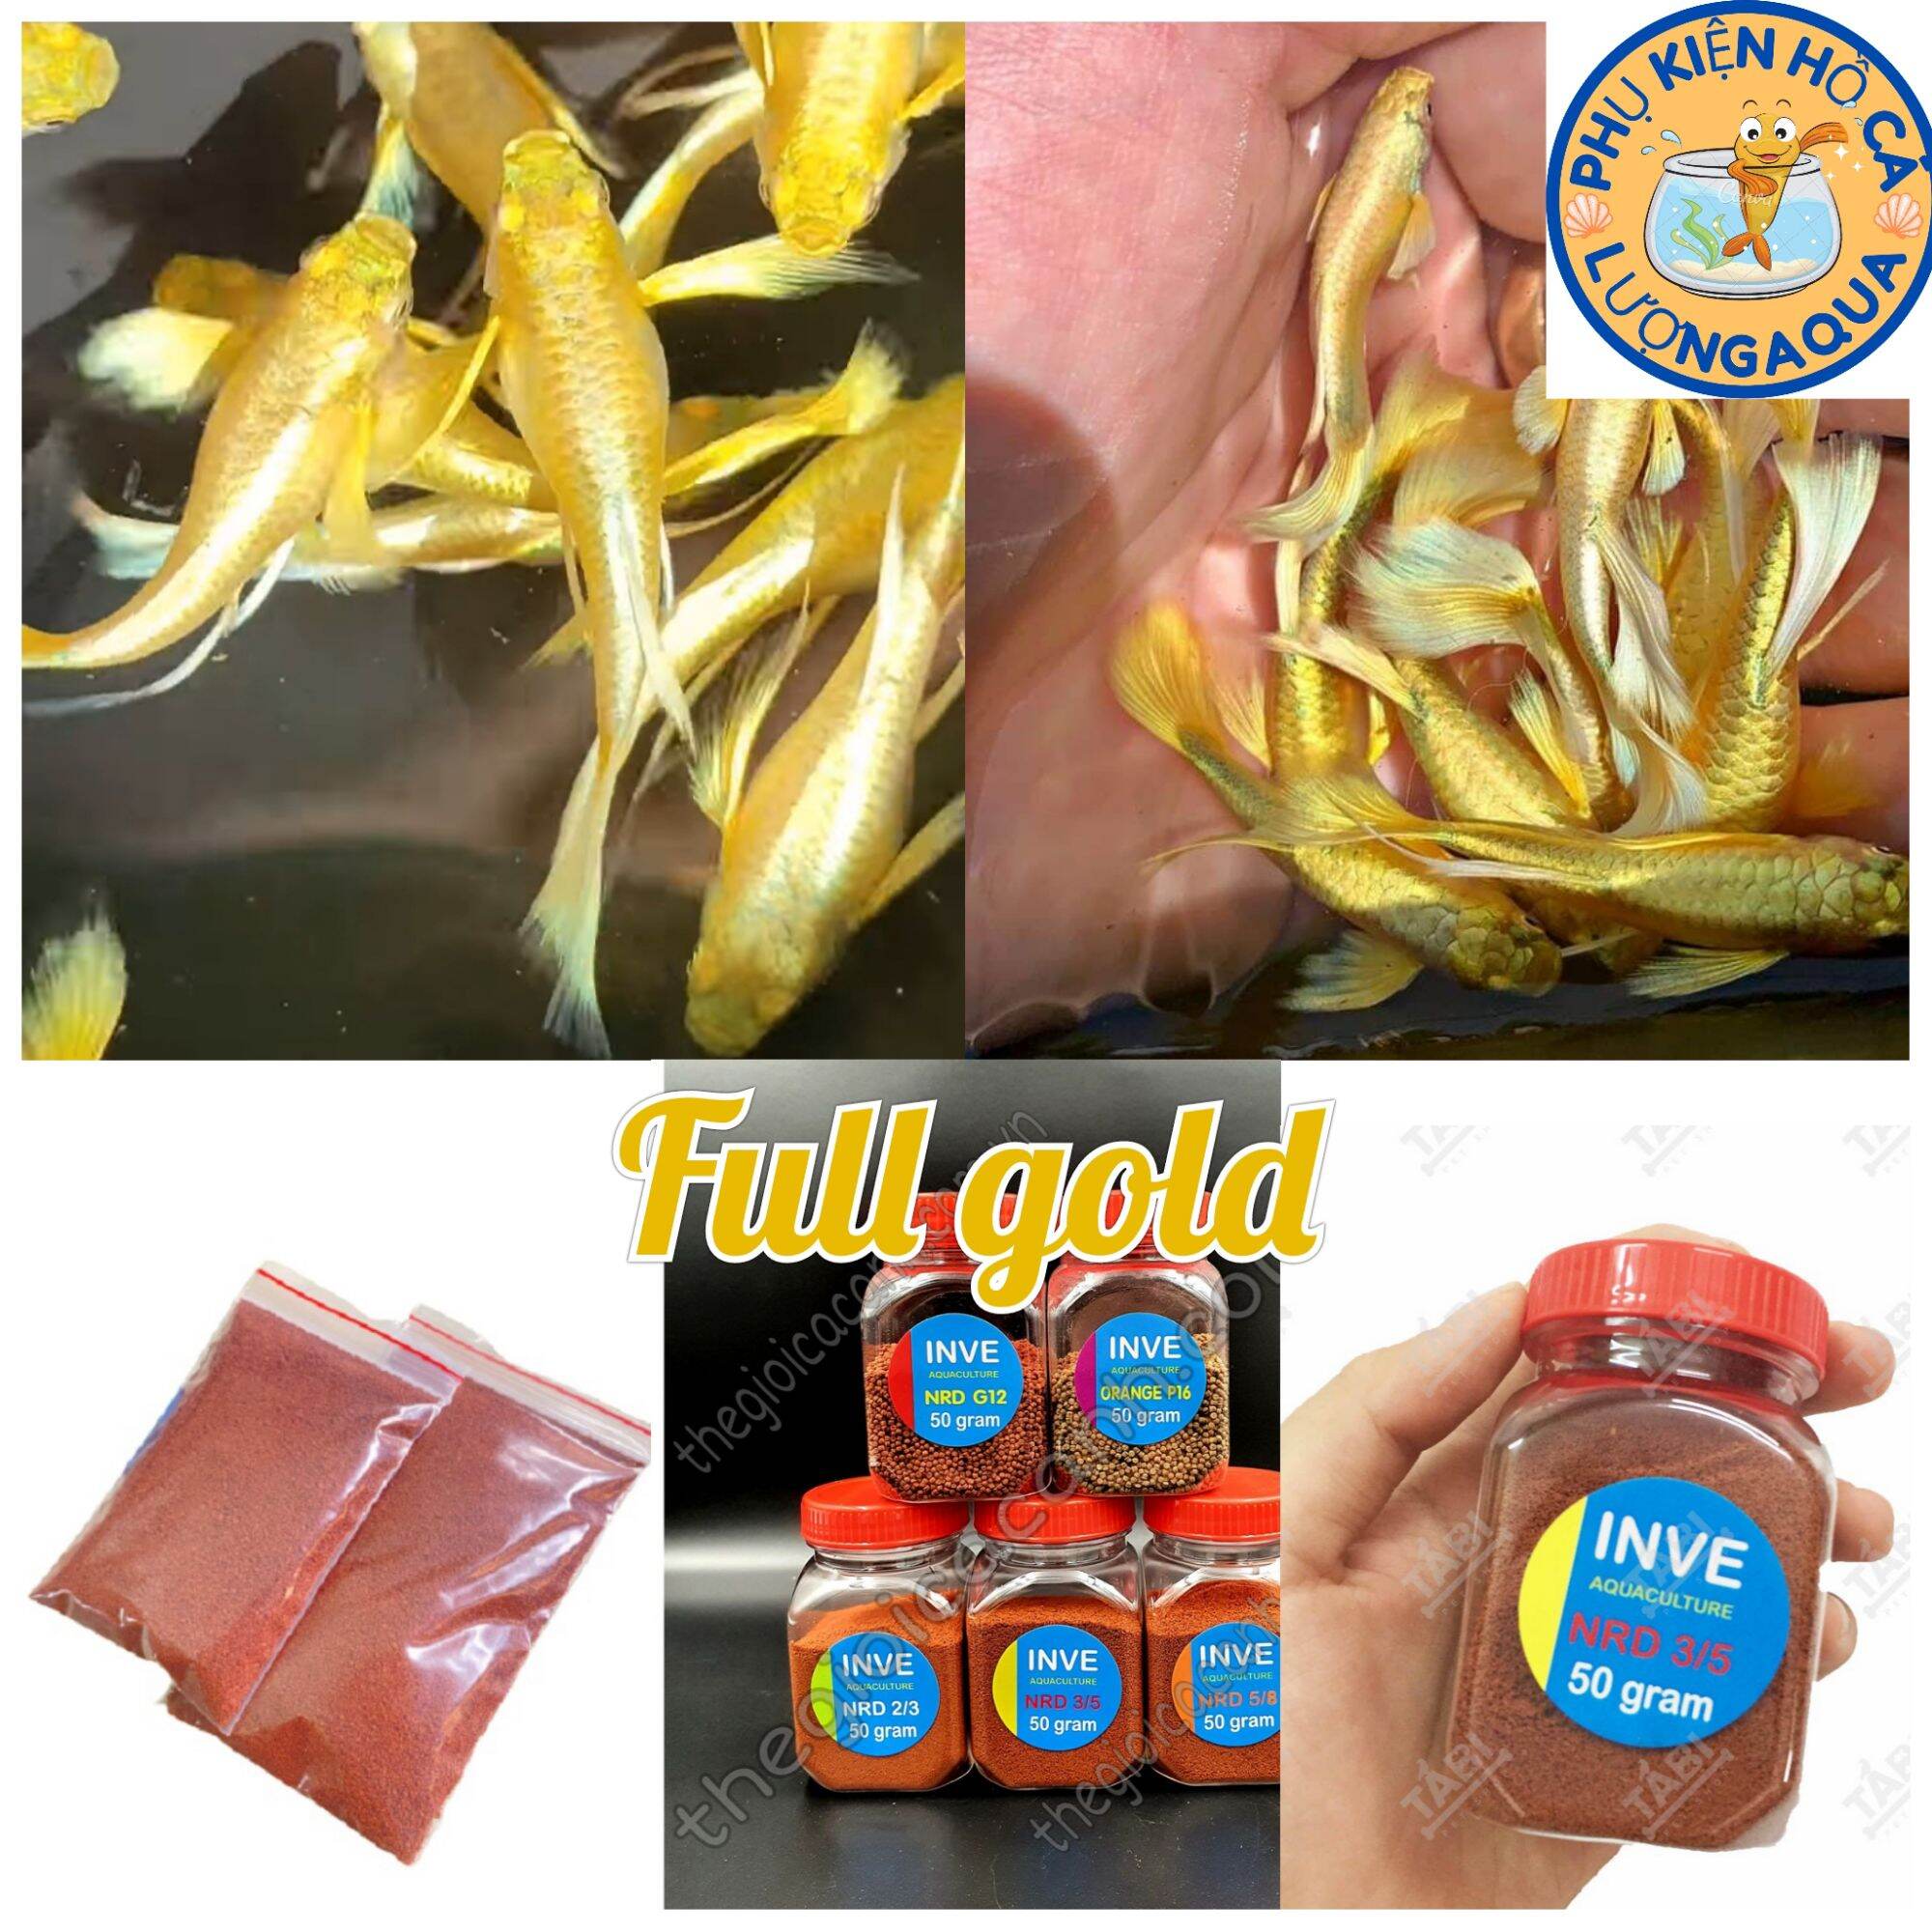 Tặng thùng mút và thức ăn cho đơn hàng từ 200k 7 màu full gold gen ribon thumbnail